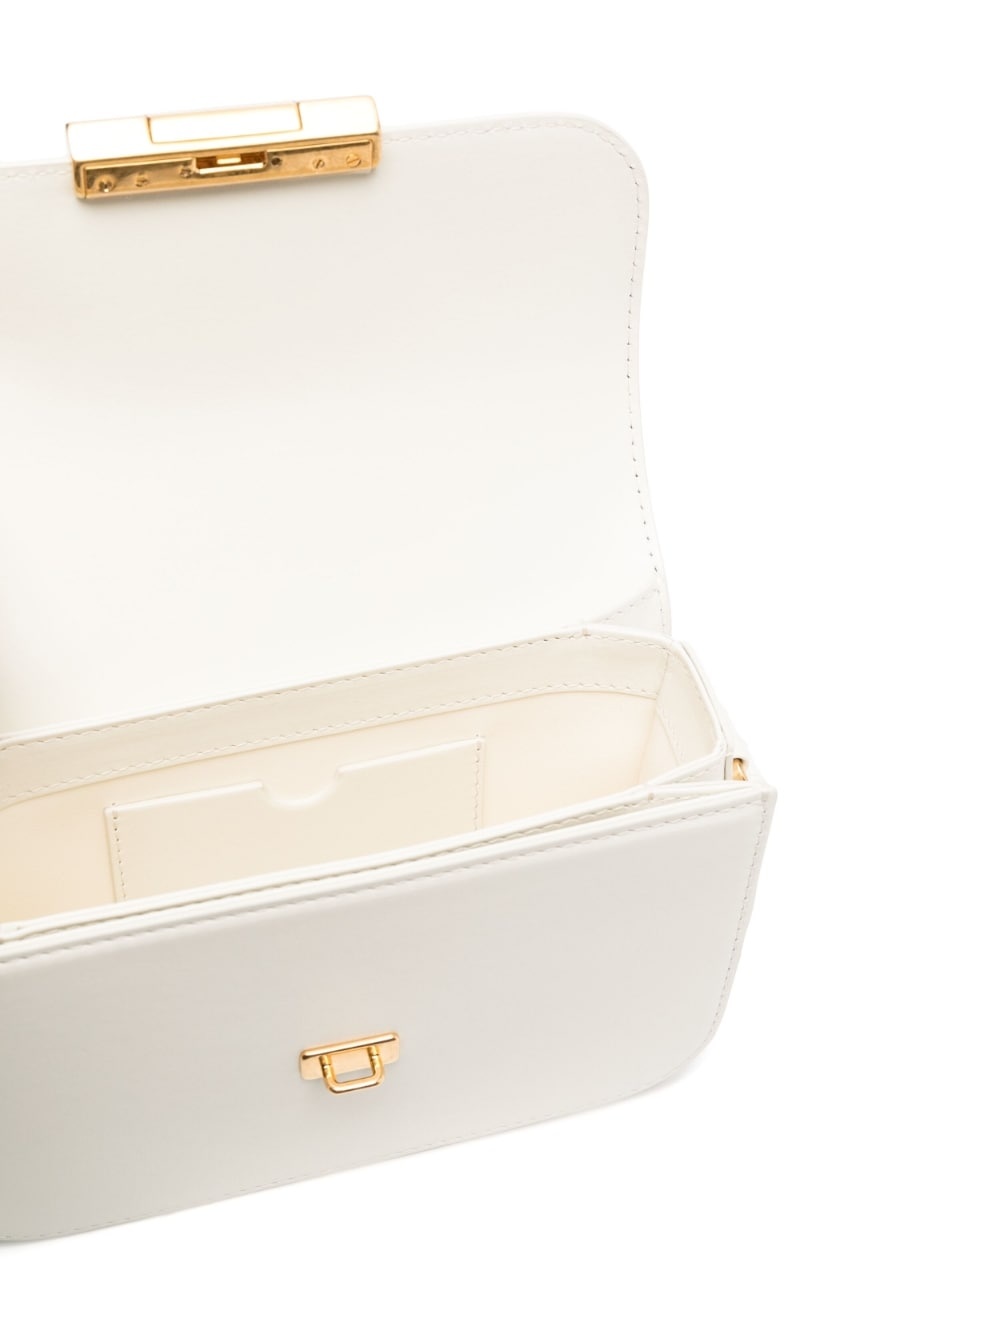 OFF-WHITE Jitney 0.5 printed embellished leather shoulder bag